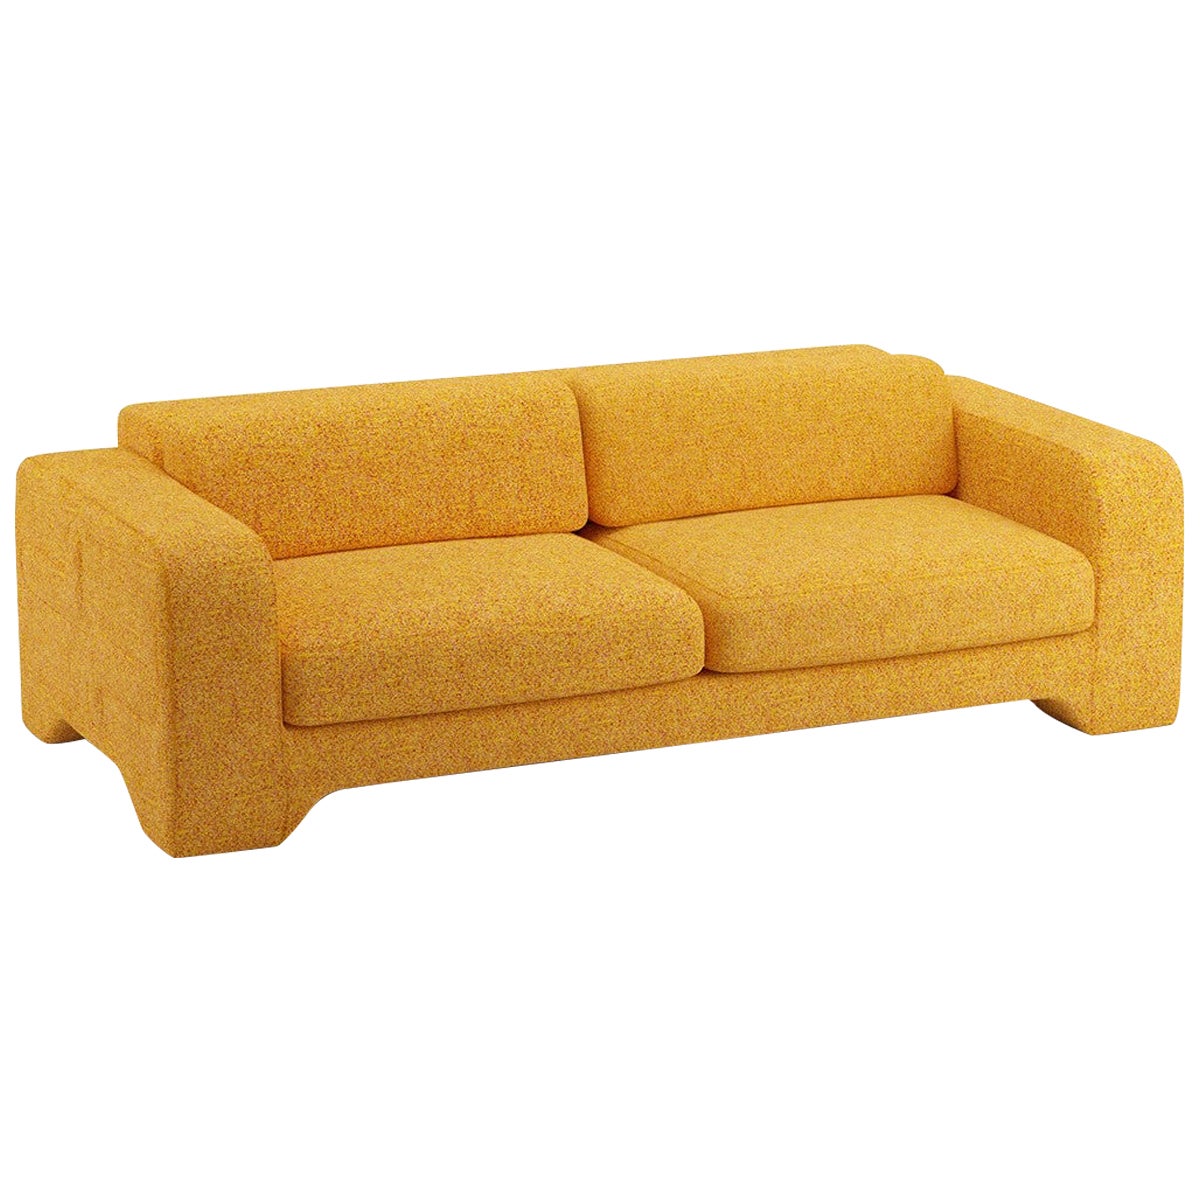 Popus Editions Giovanna 2.5 Seater Sofa in Saffron Zanzi Linen Fabric For Sale